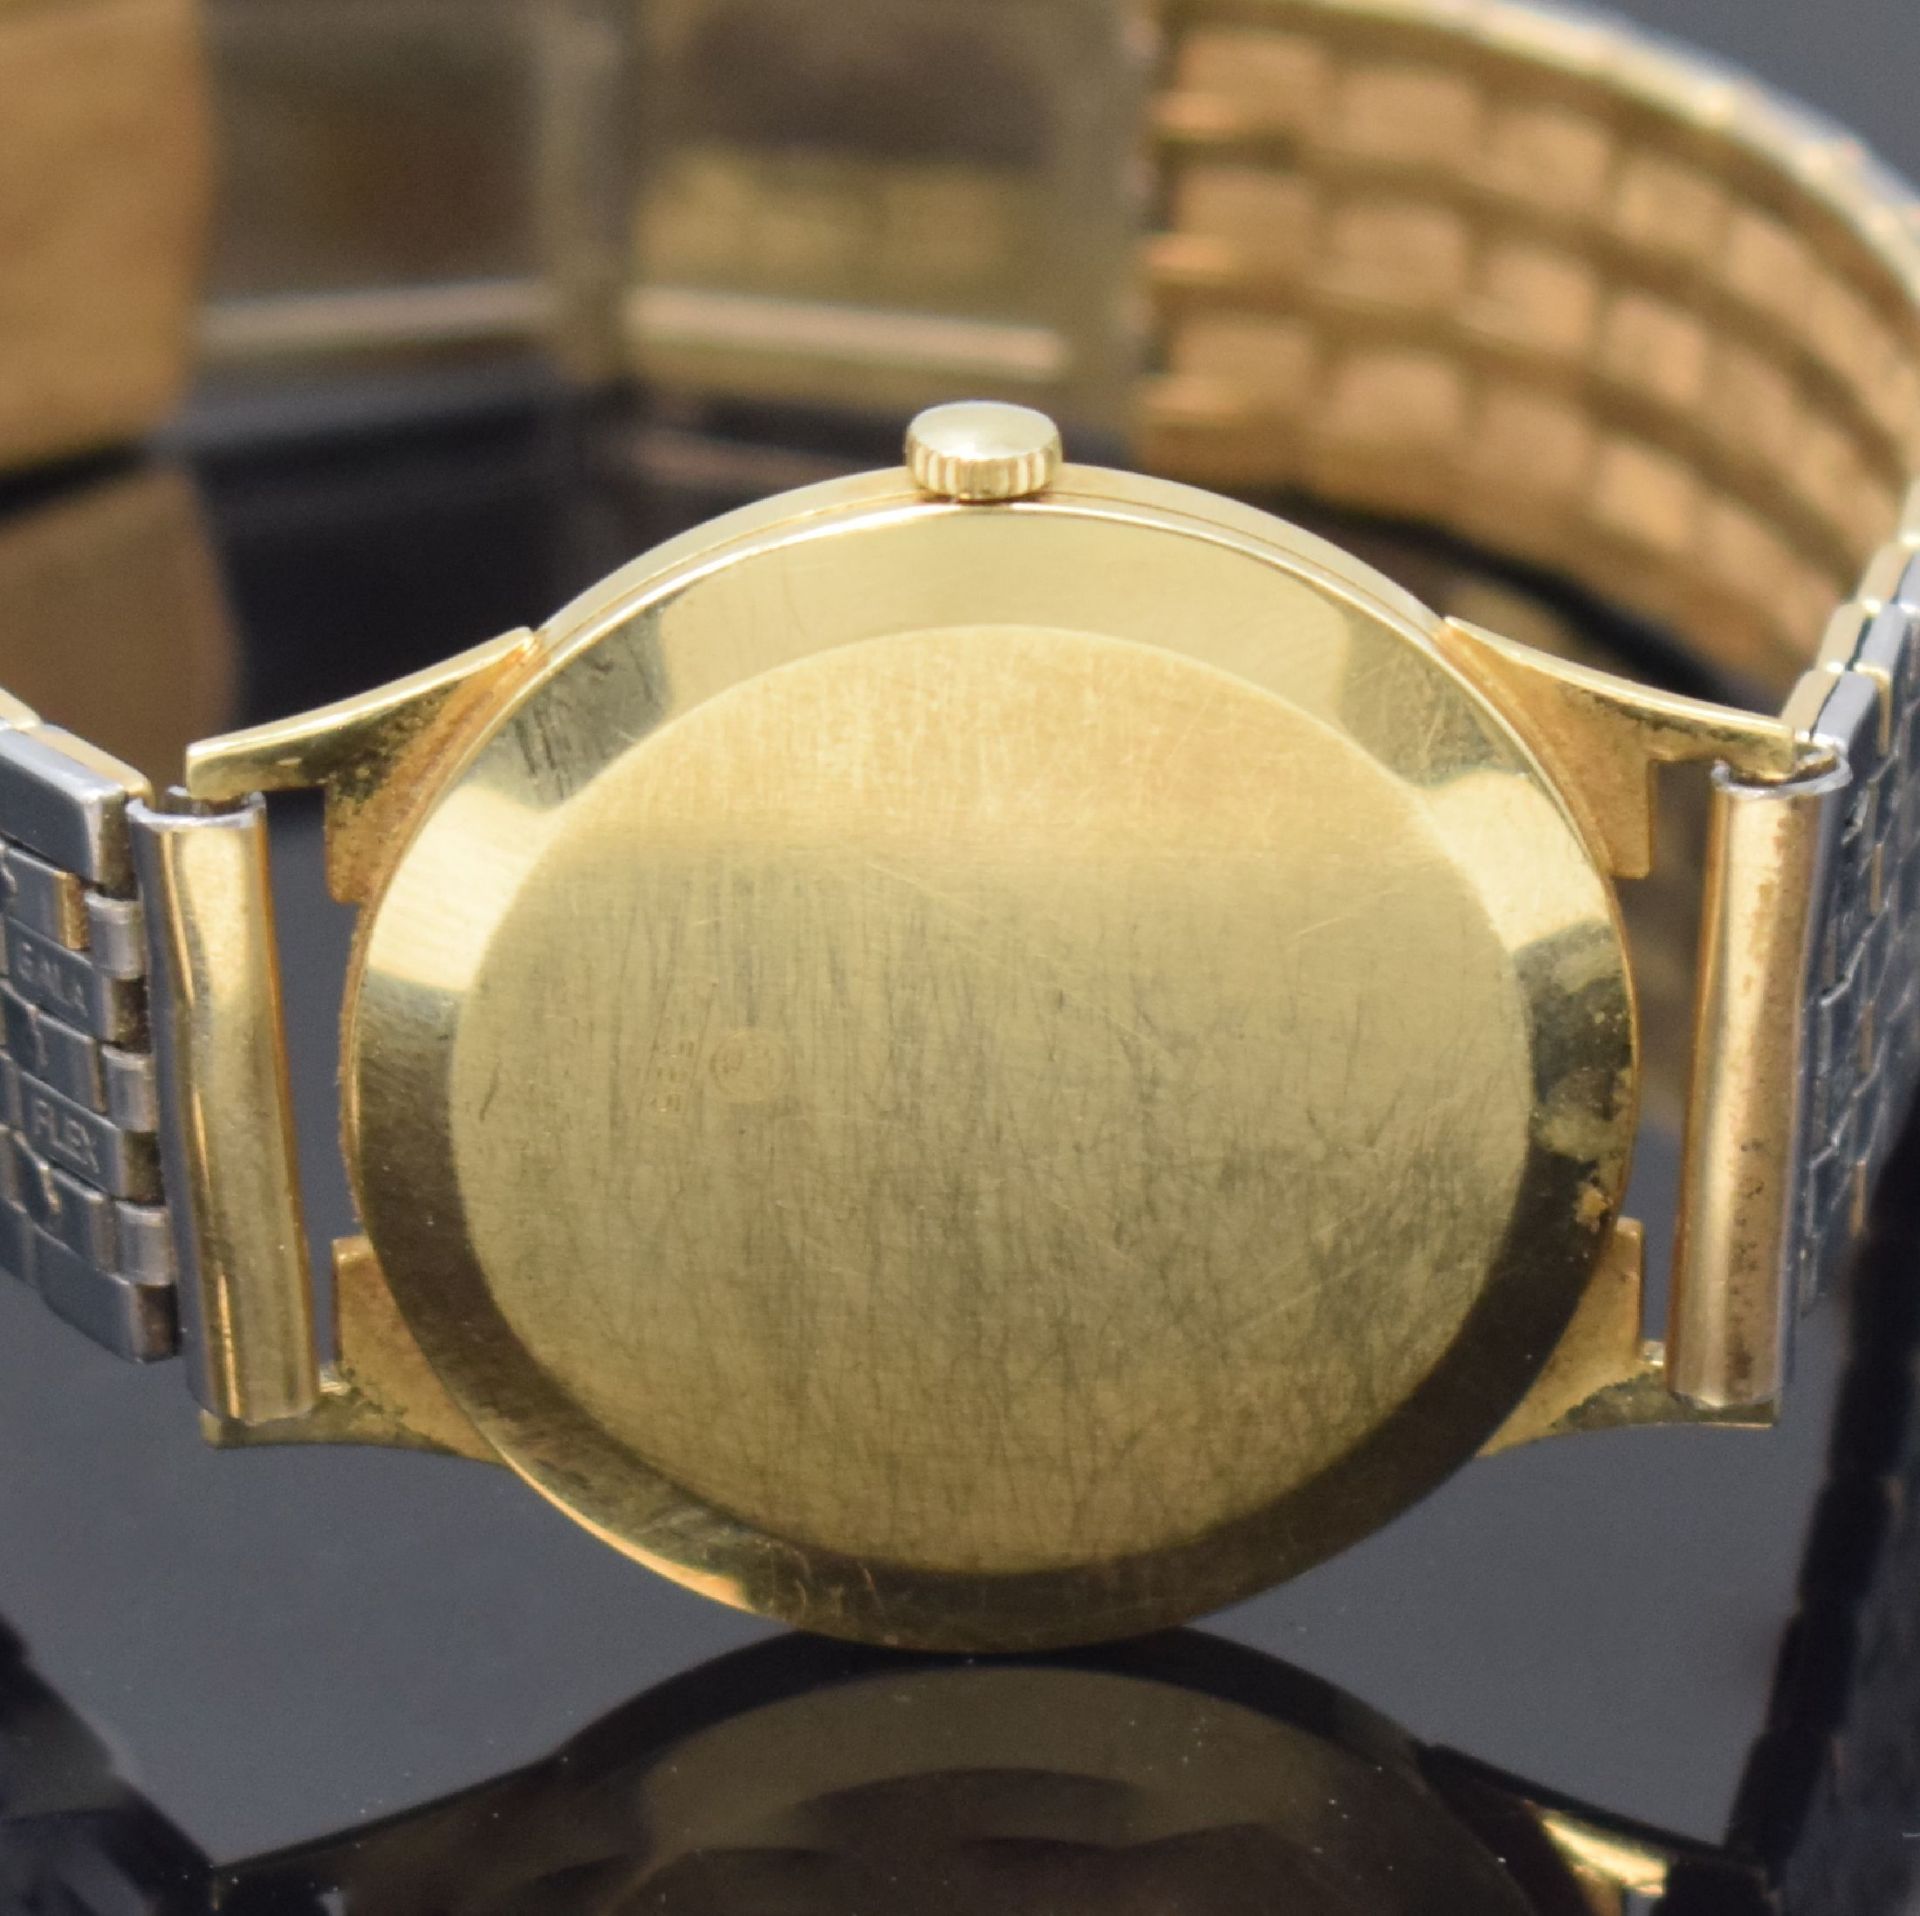 PRIOSA Extra Armbanduhr in GG 585/000, Schweiz um 1960, - Bild 4 aus 4